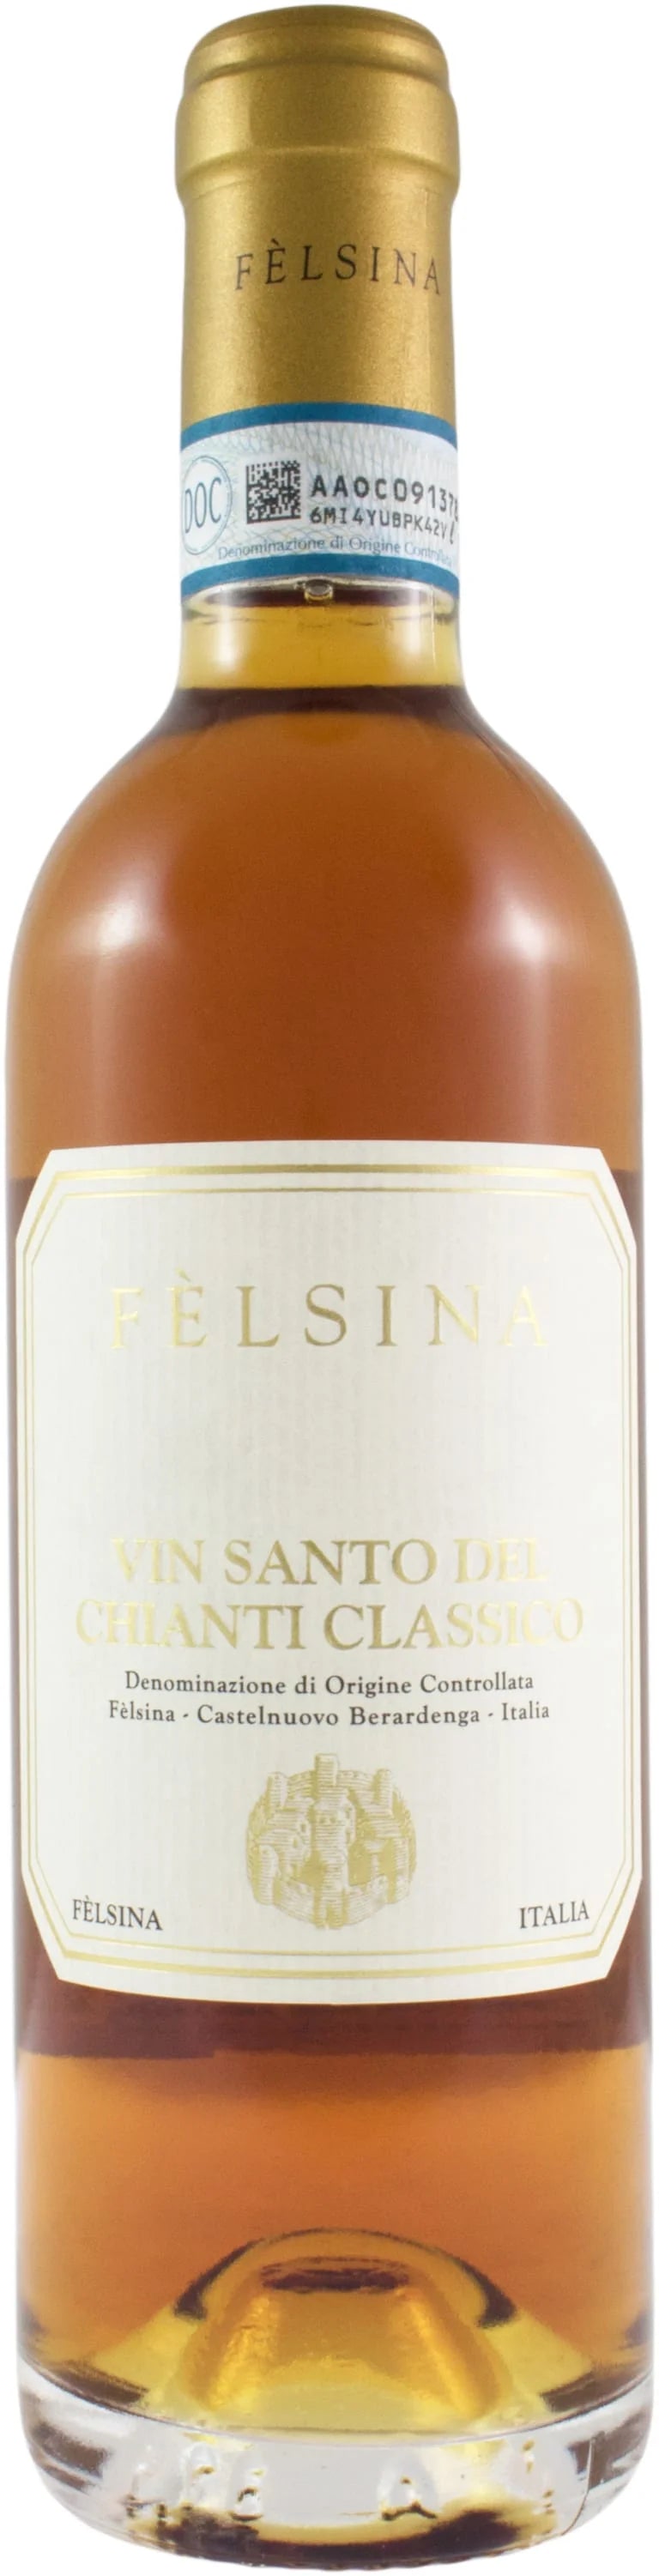 Felsina Vin Santo del Chianti Classico 2015